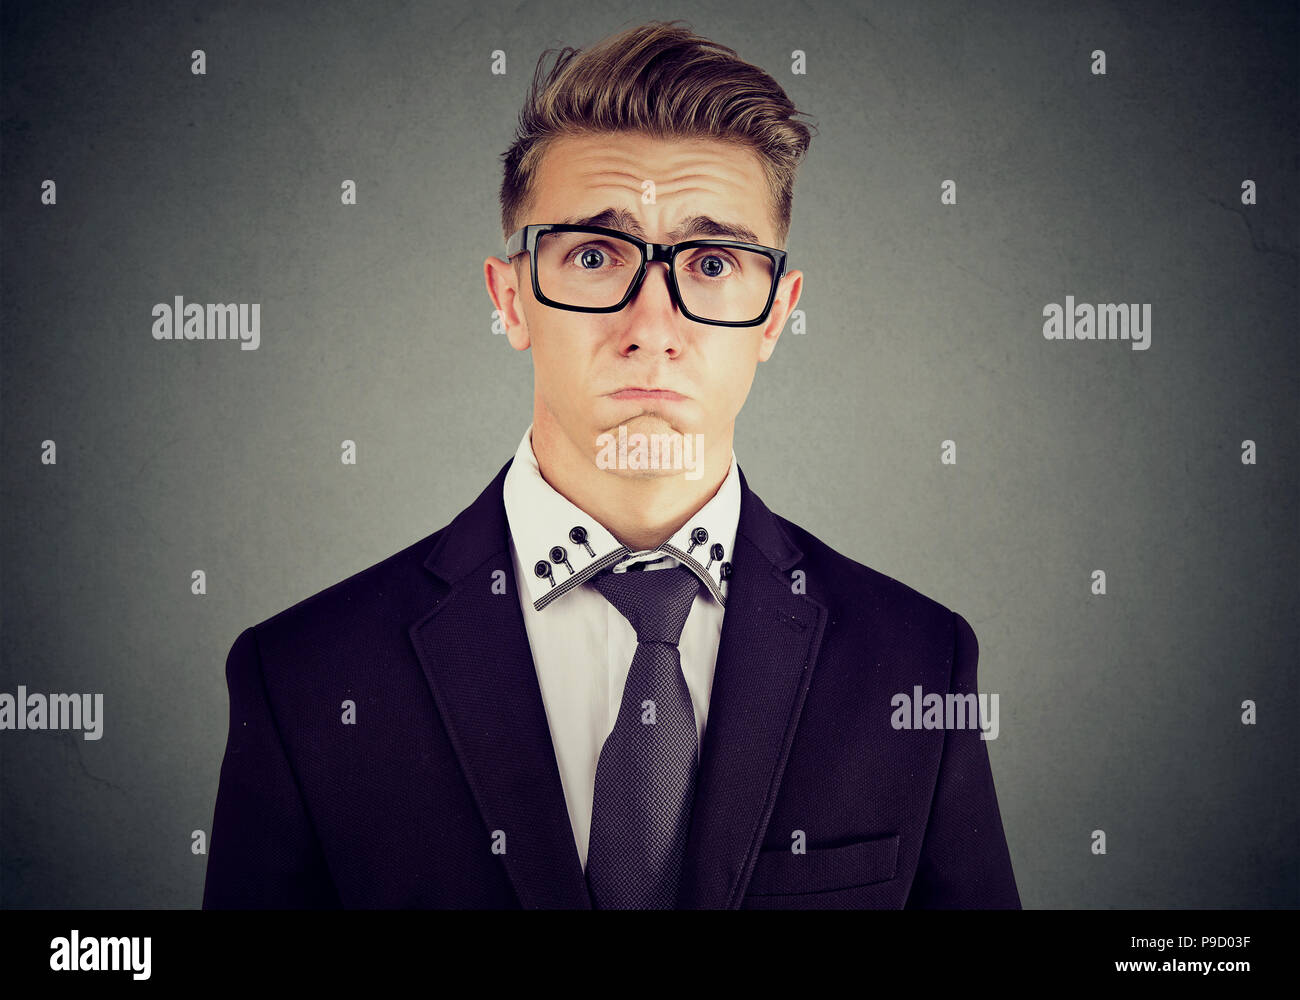 Junge formale Mann in Anzug und Brille suchen beleidigt und Mitleid finsteres Gesicht und schrie auf grauem Hintergrund Stockfoto